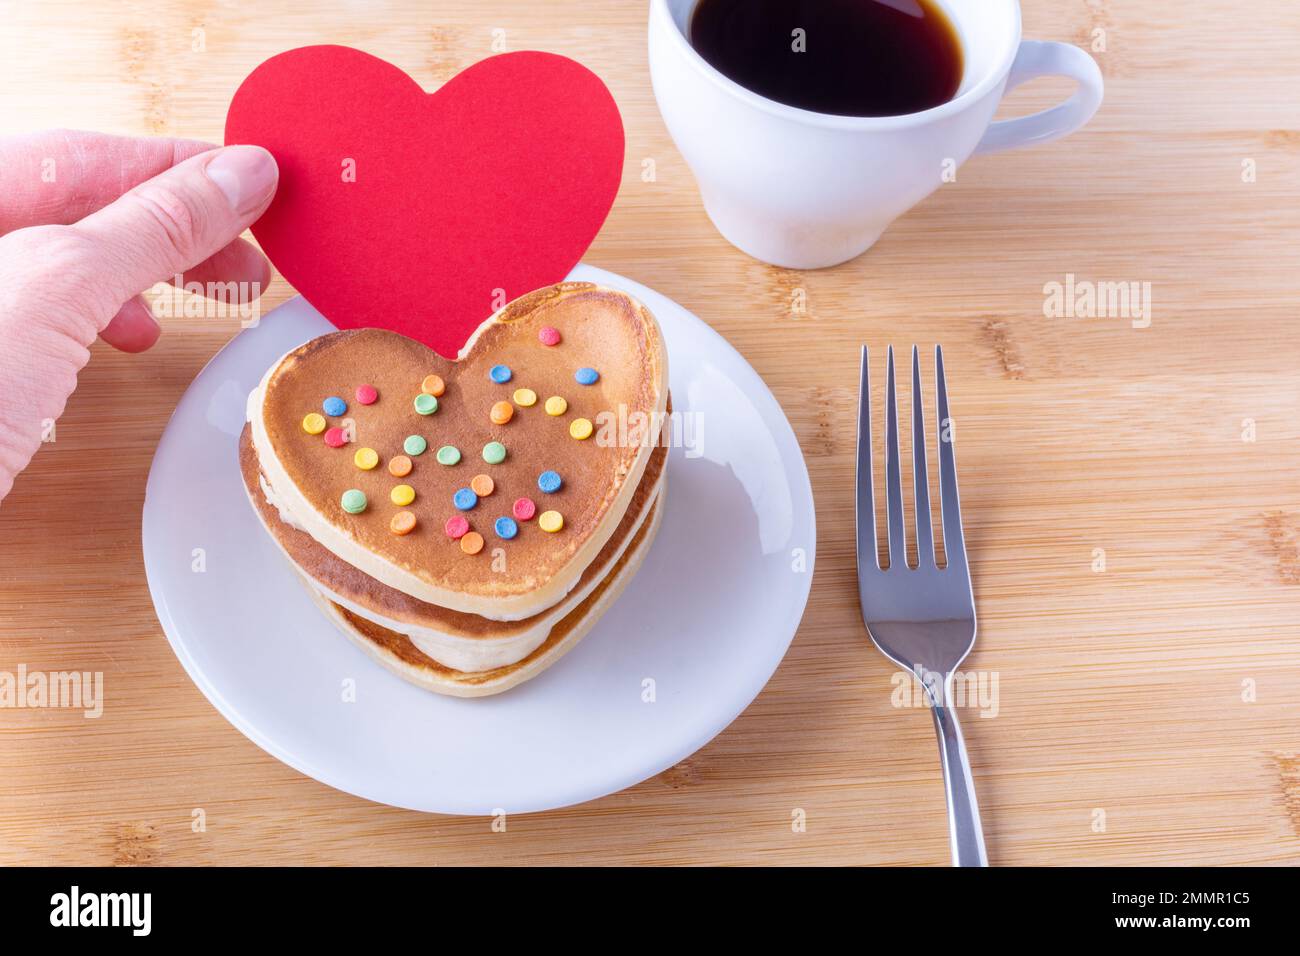 Eine Hand hält eine rote, leere Herzform neben hausgemachten herzförmigen Pfannkuchen mit Zuckerdekoration auf einem weißen Teller, einer Gabel, einem Becher mit Kaffee oder Kakao, clos Stockfoto